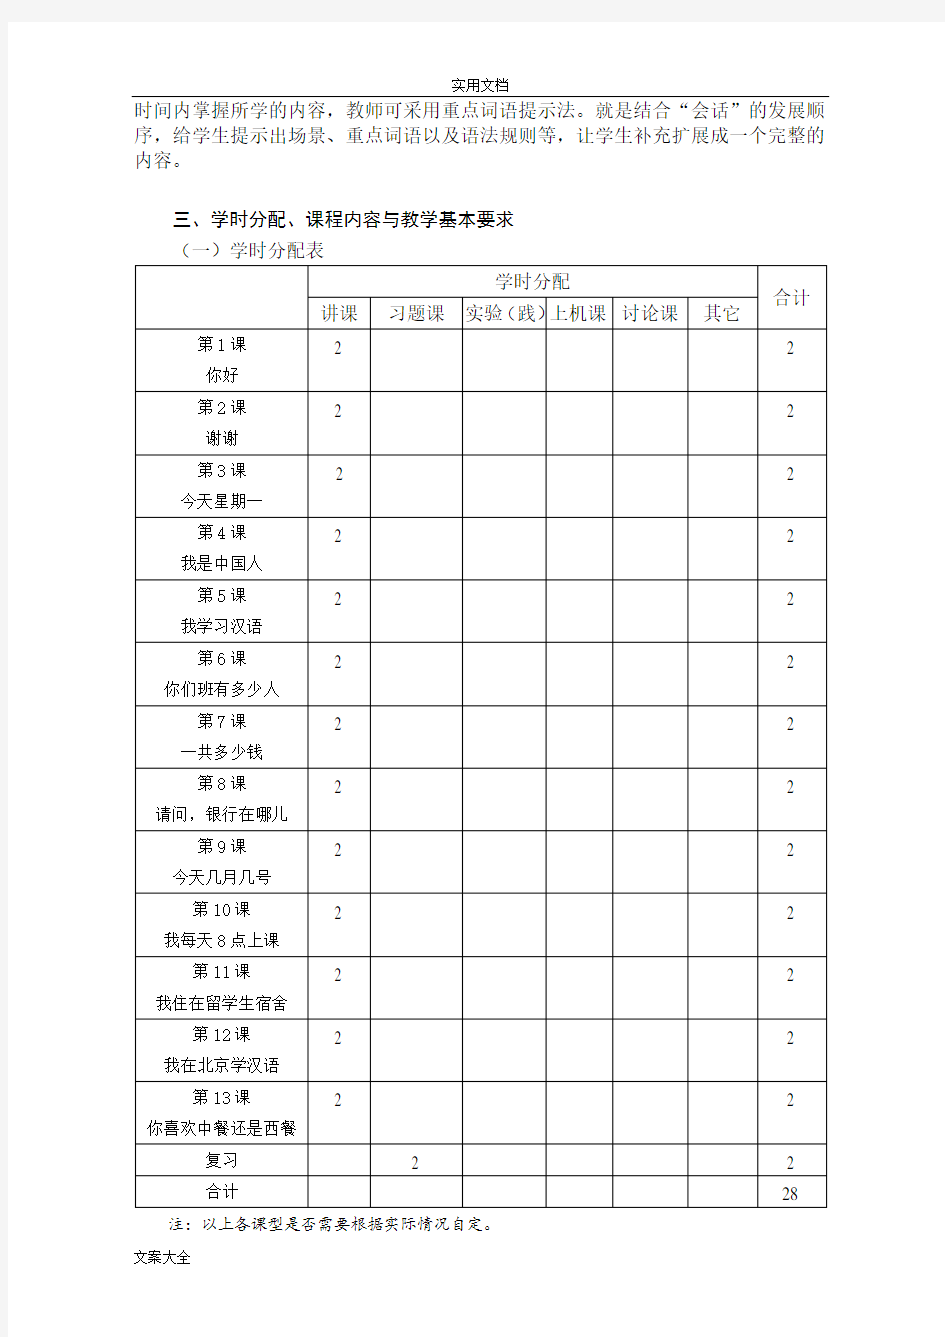 发展汉语初级口语教学大纲设计-王悦